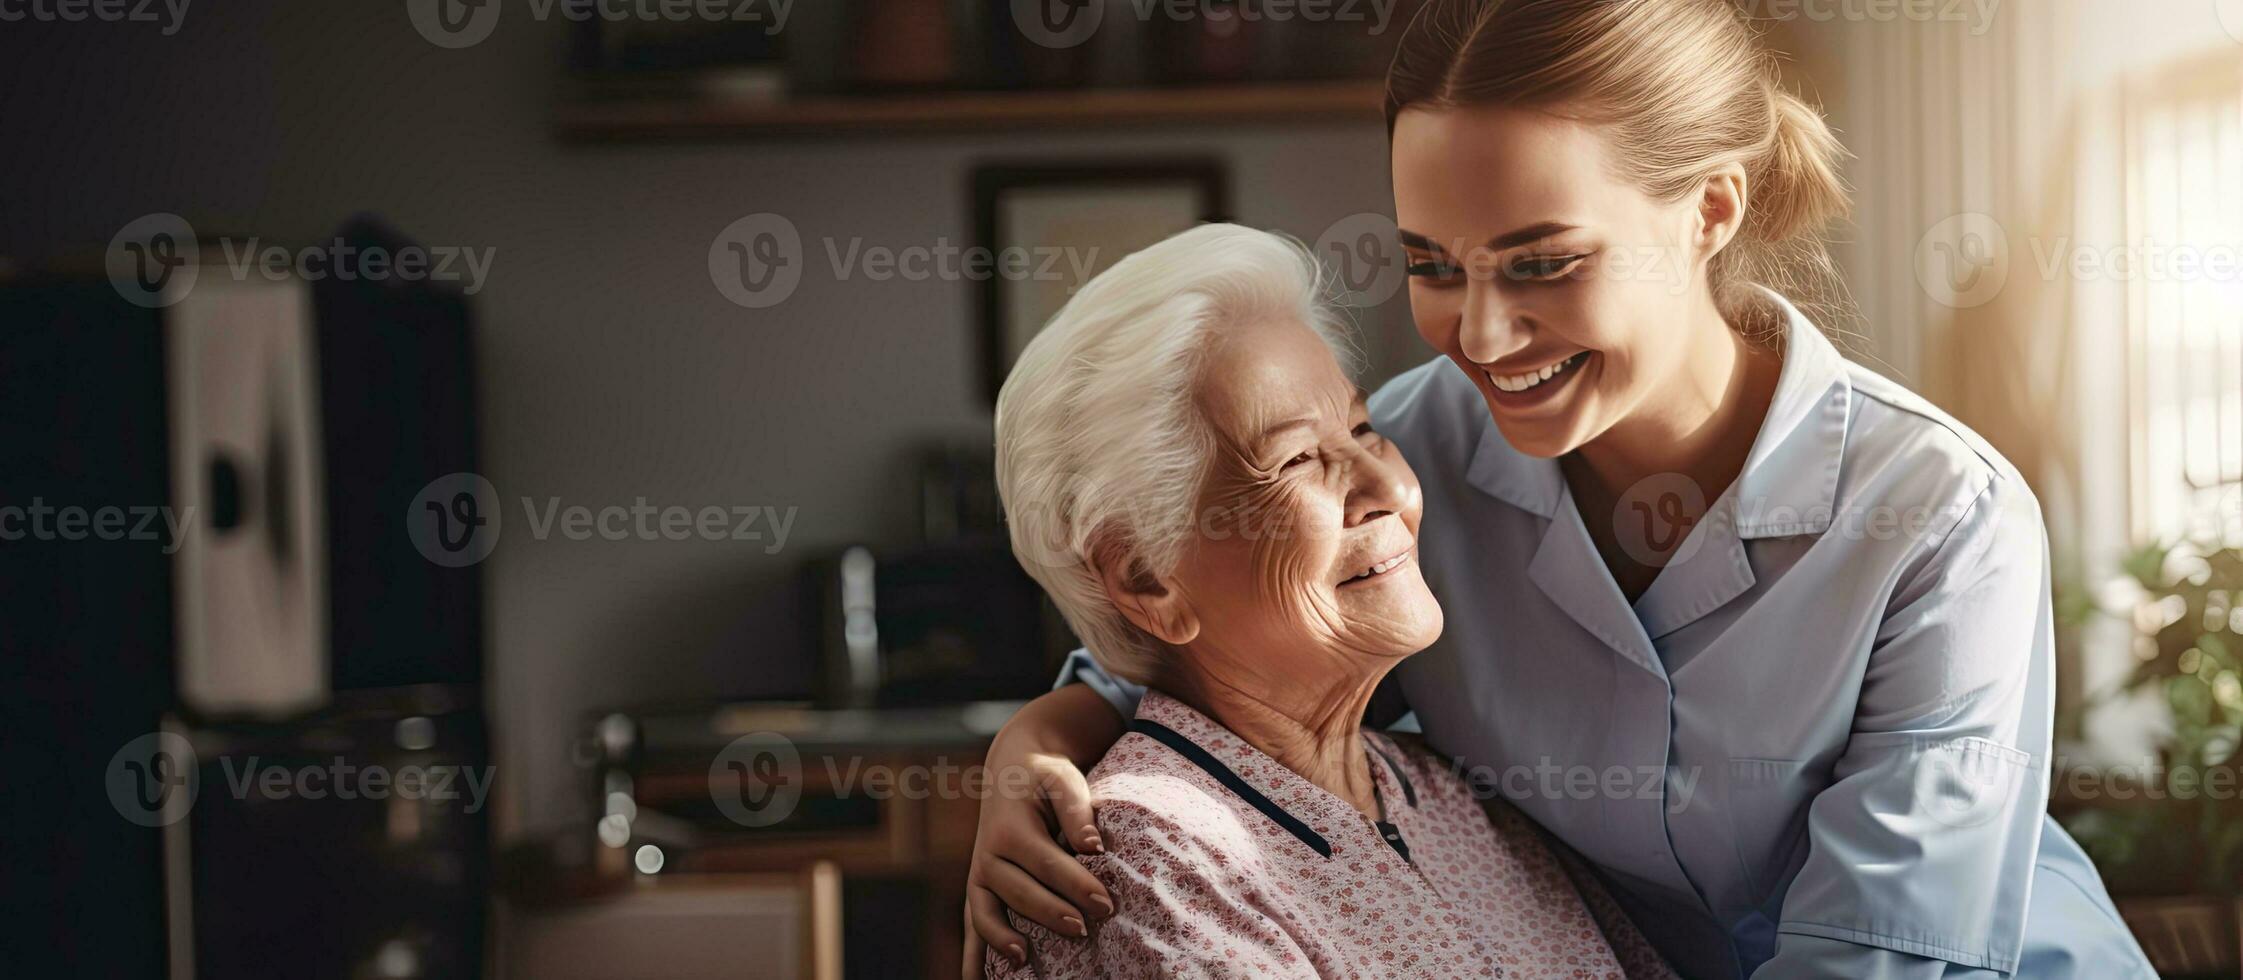 verzorger omarmt ouderen vrouw gedurende bezoek Bij huis foto